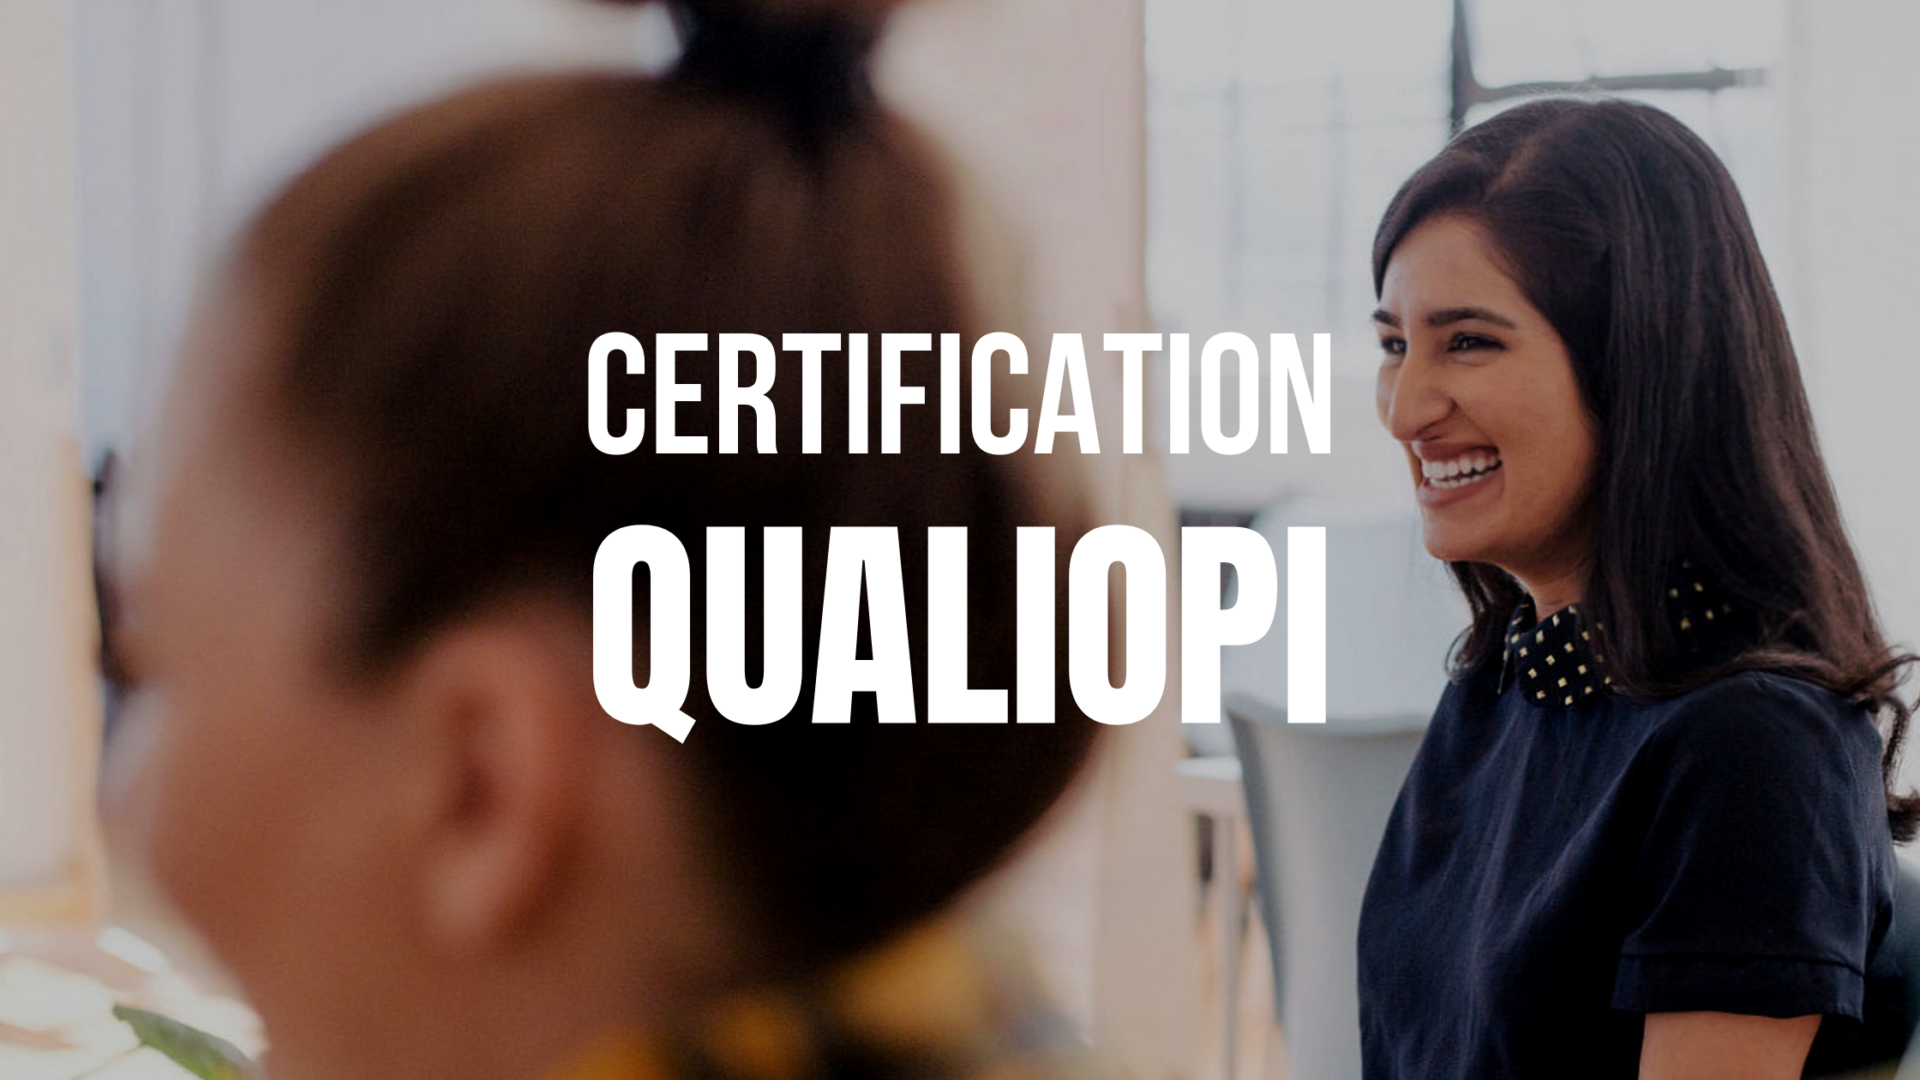 5 clés pour faciliter votre certification Qualiopi grâce à Teach Up.